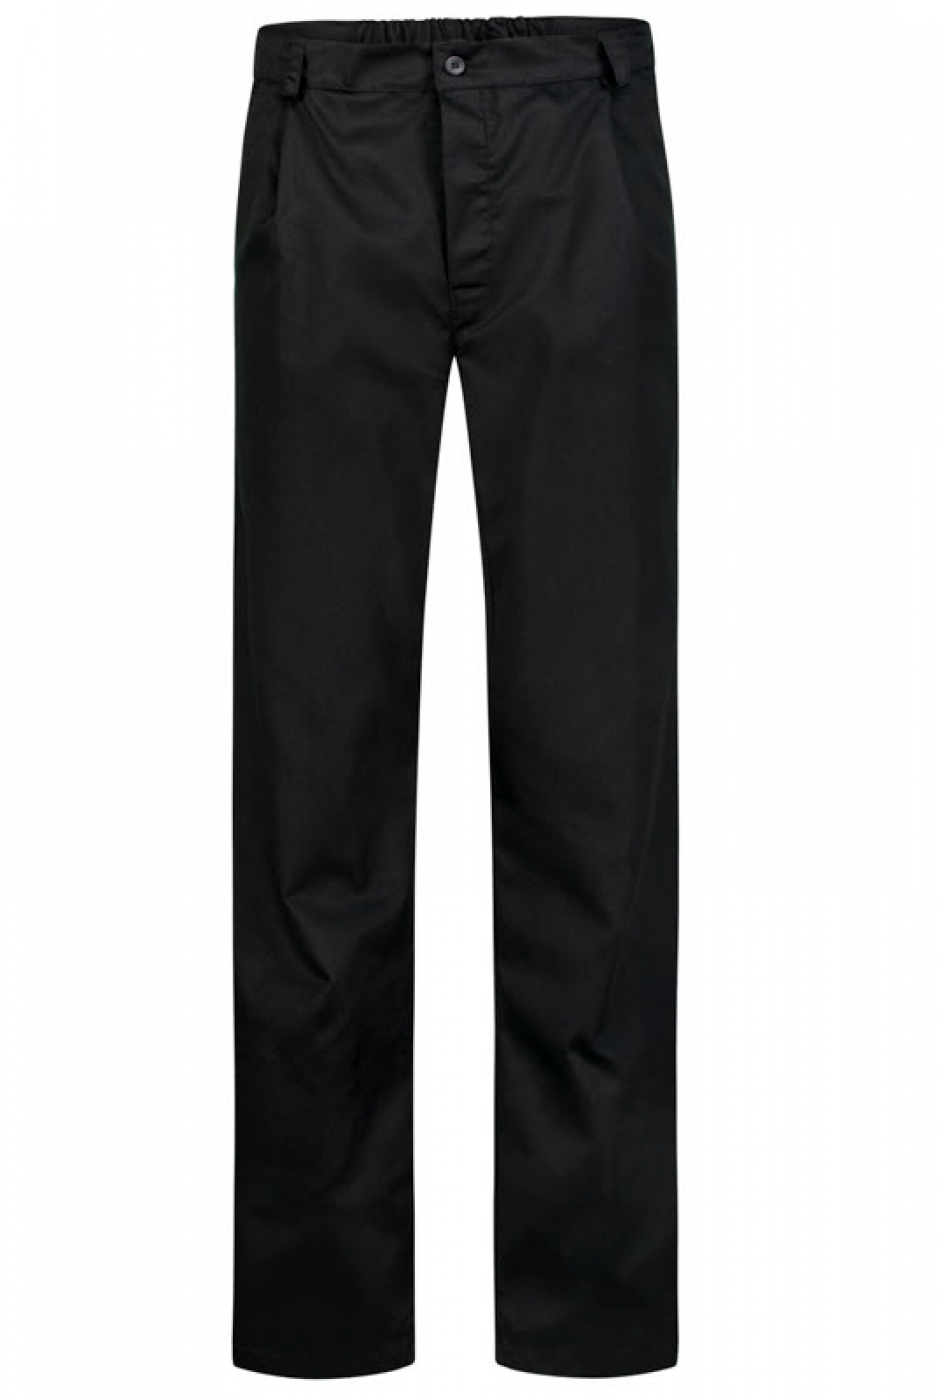 Pantalon bucatar, model cu fermoar, buzunare interioare si elastic la spate, de barbat